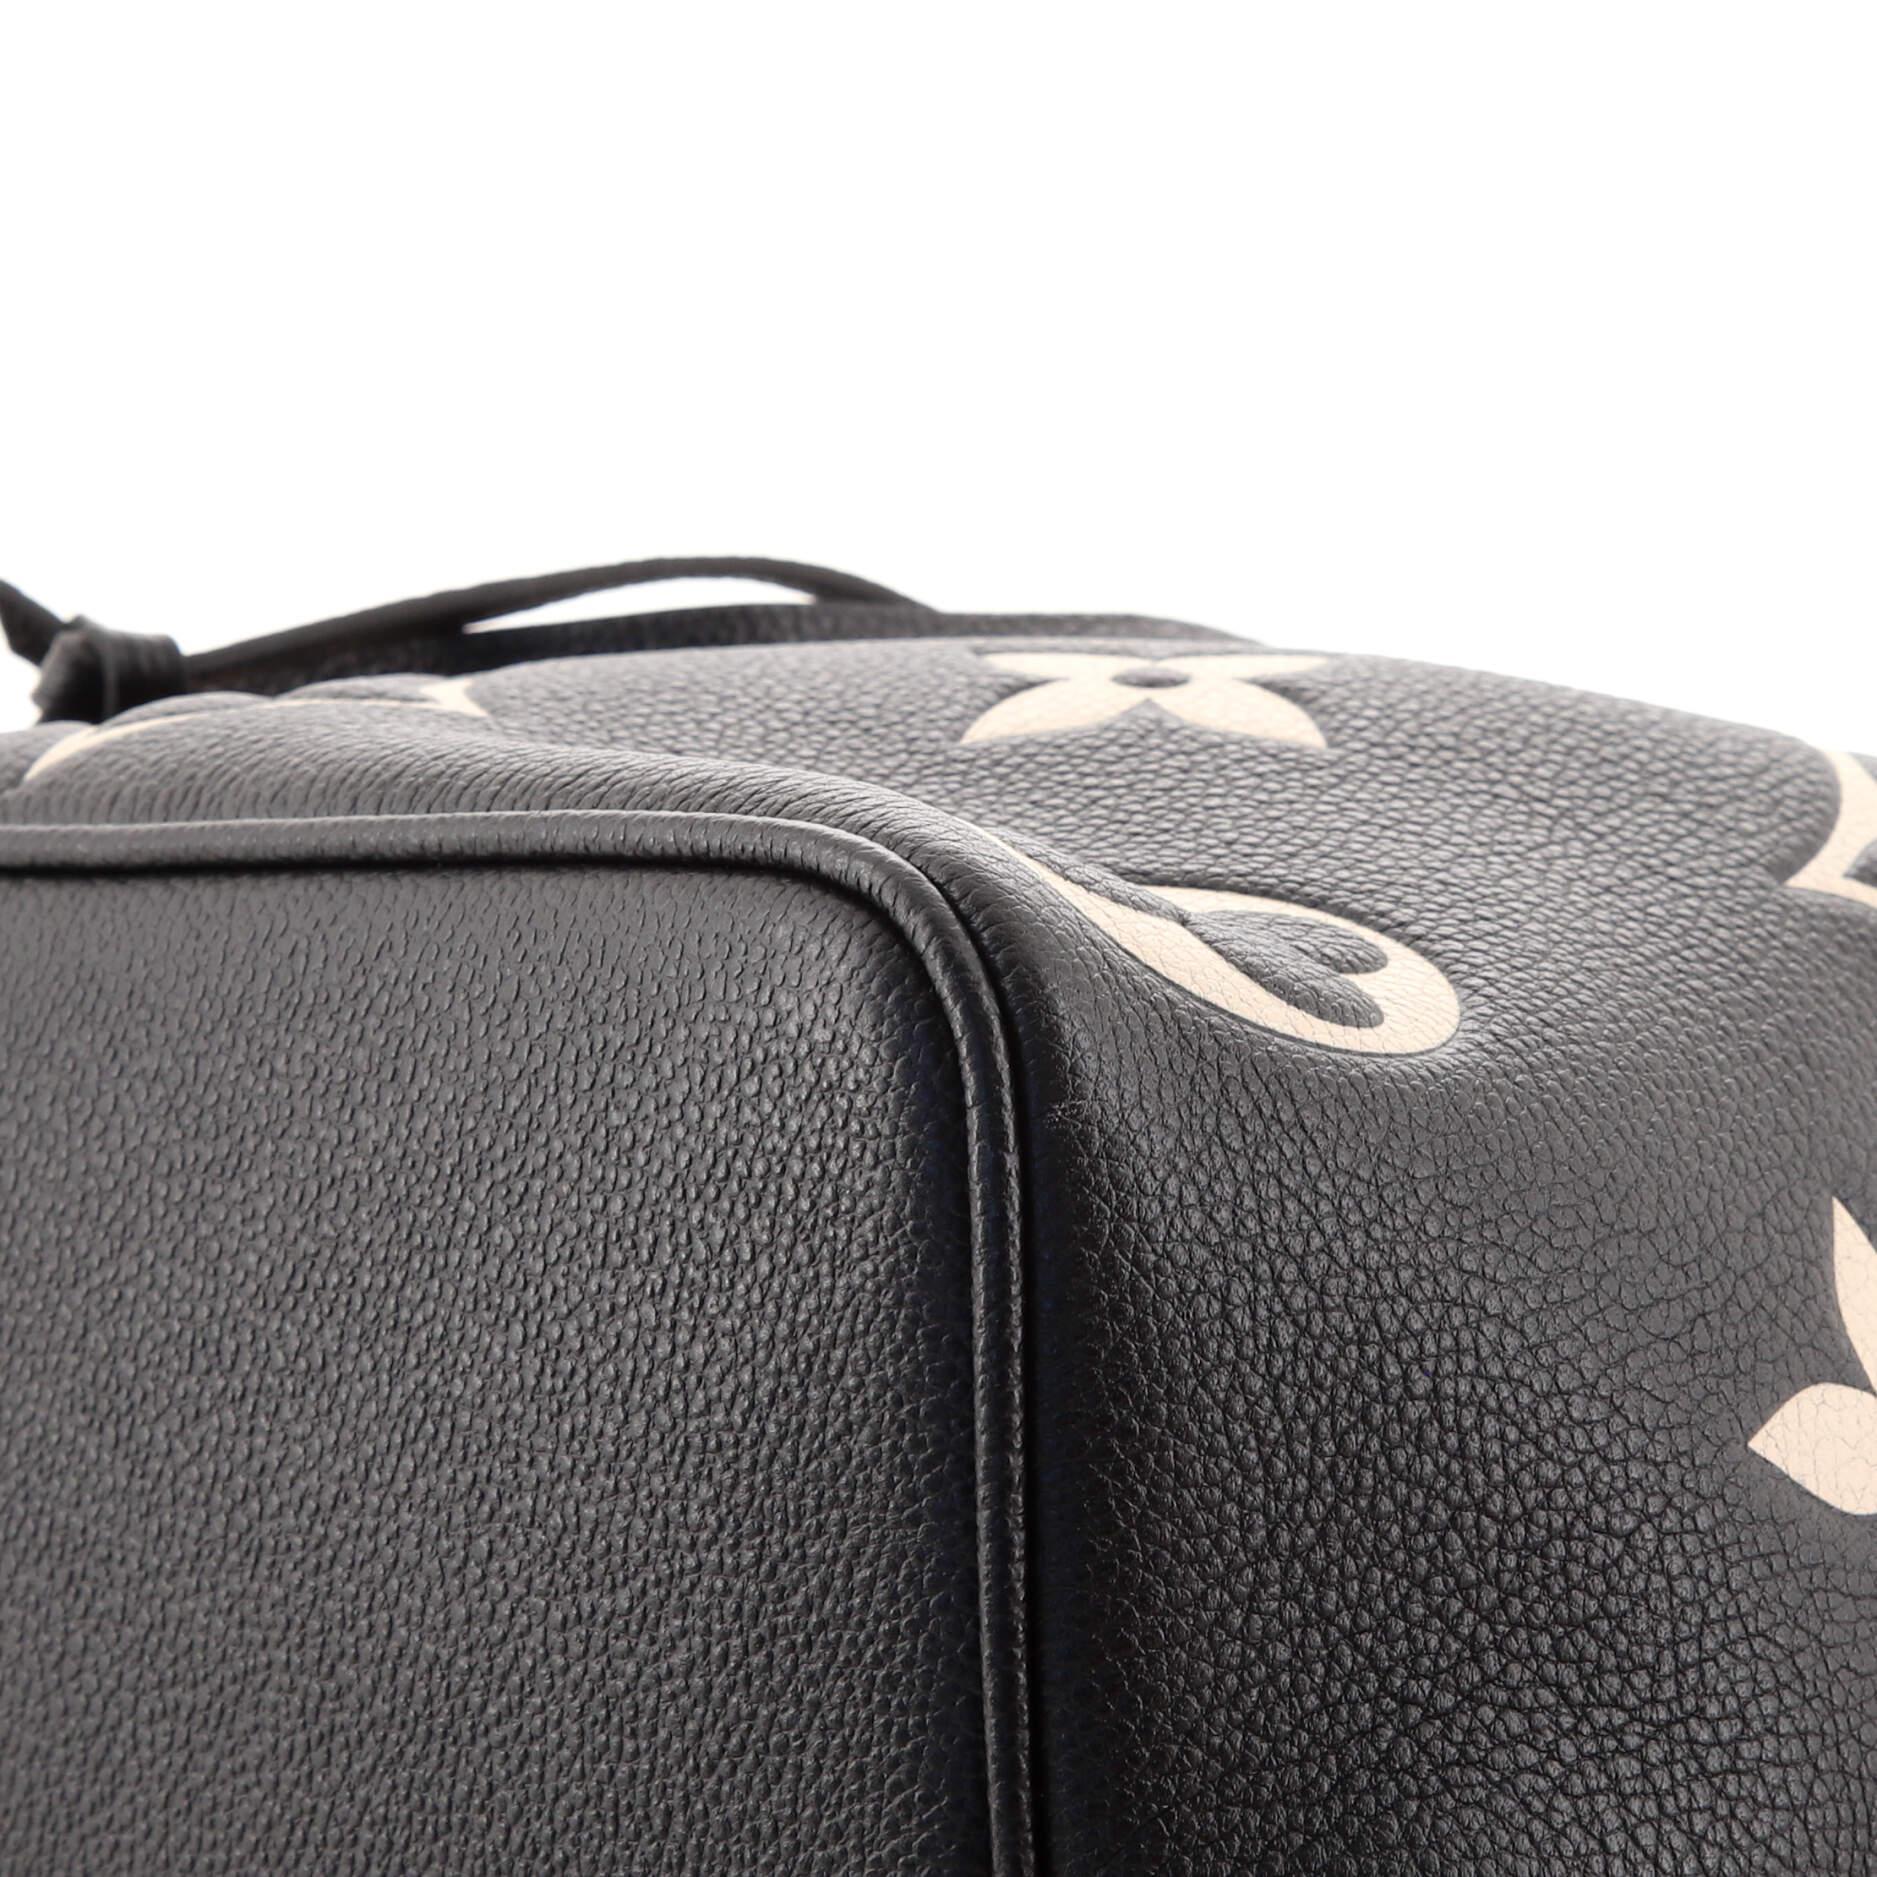 Black Louis Vuitton NeoNoe Handbag Bicolor Monogram Empreinte Giant MM